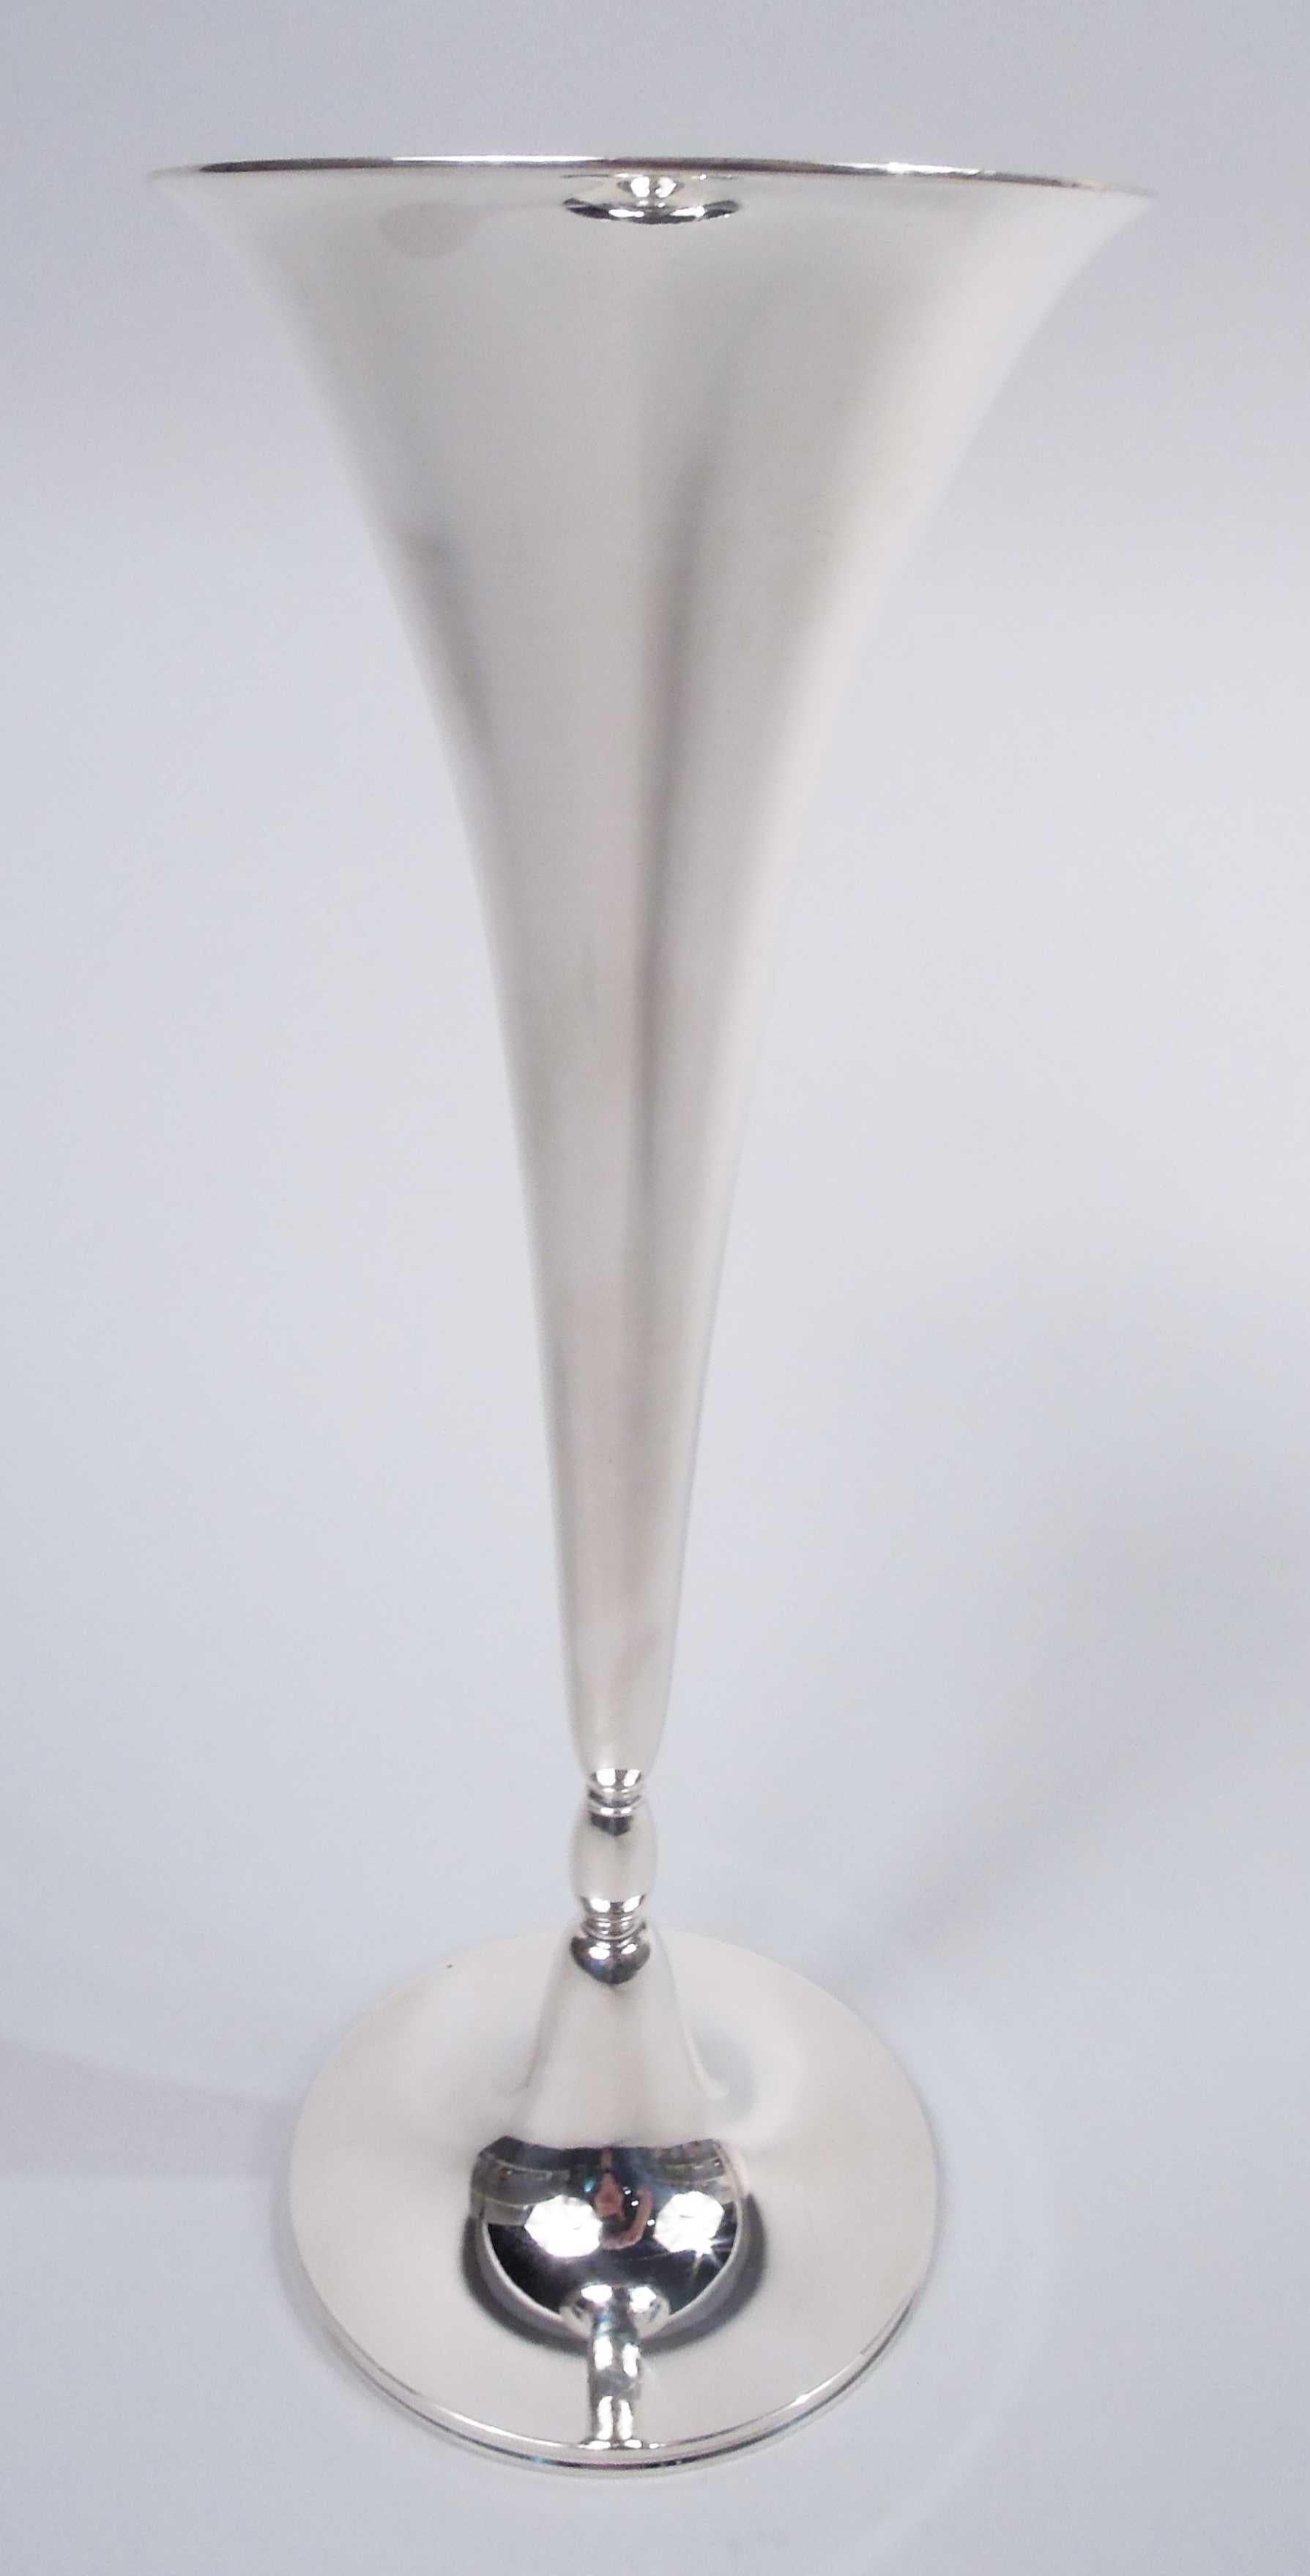 Vase moderne en argent sterling. Fabriqué par Tiffany & Co. à New York, ca. 1908. Cône à embouchure évasée sur une calotte ovoïde verticale montée sur un pied bombé. Entièrement marquée avec le cachet du fabricant, le numéro de modèle 17188